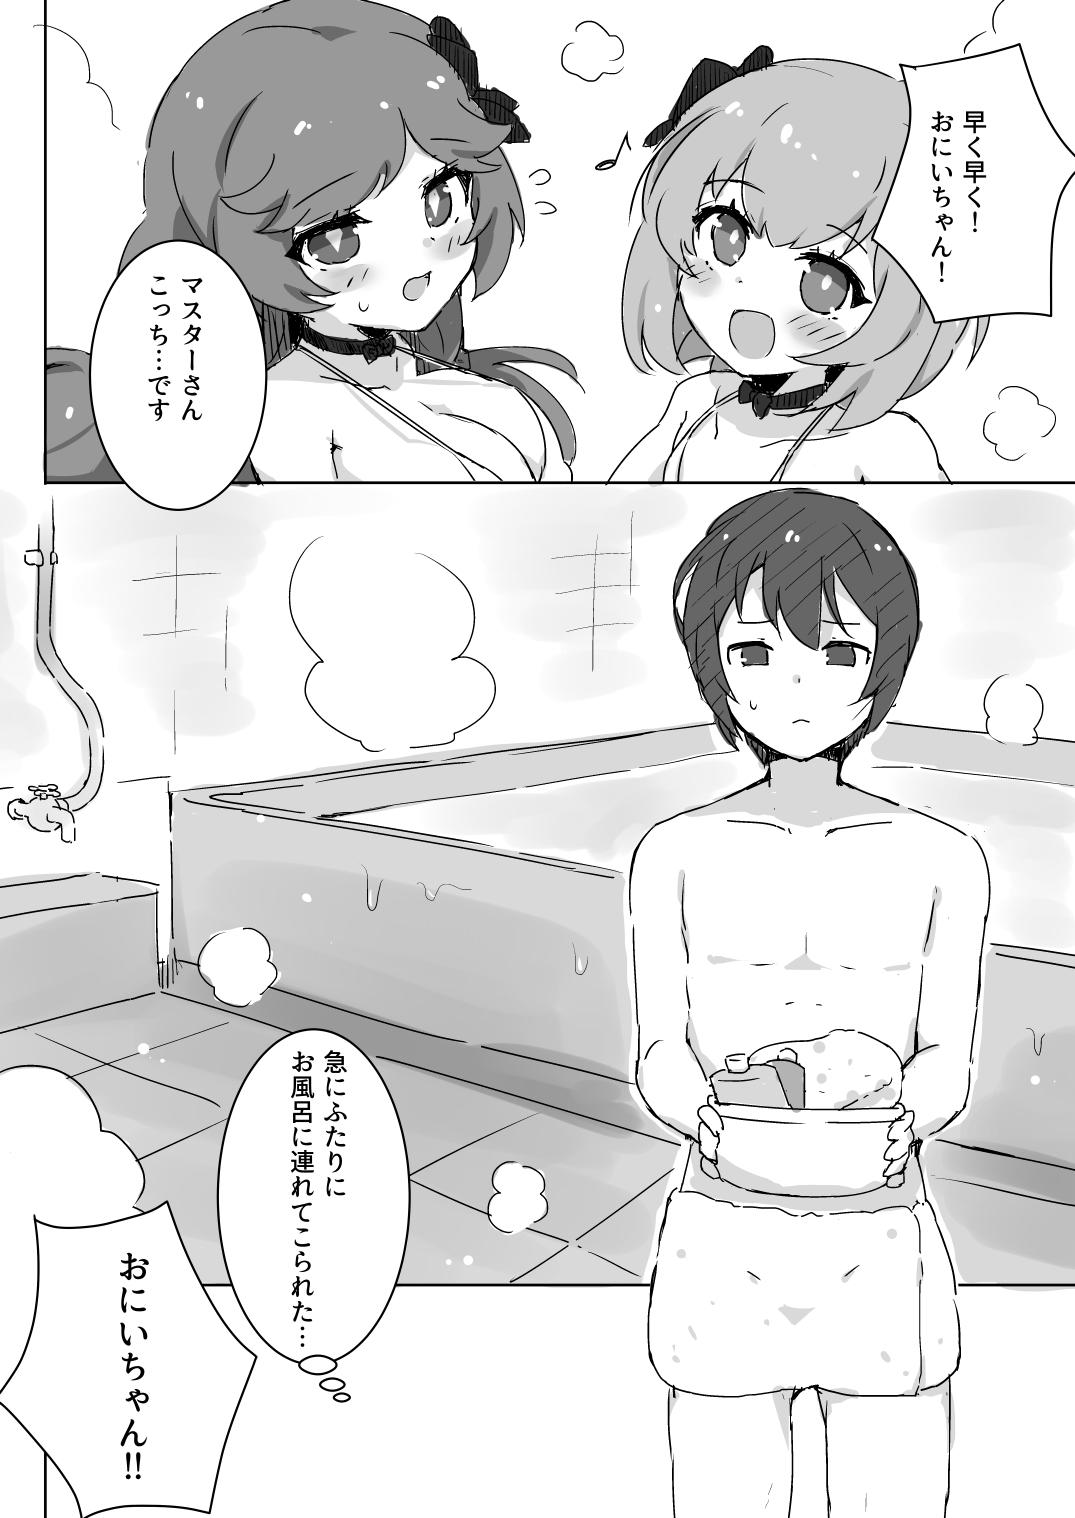 Fuwa Fuwa Bath Time 3